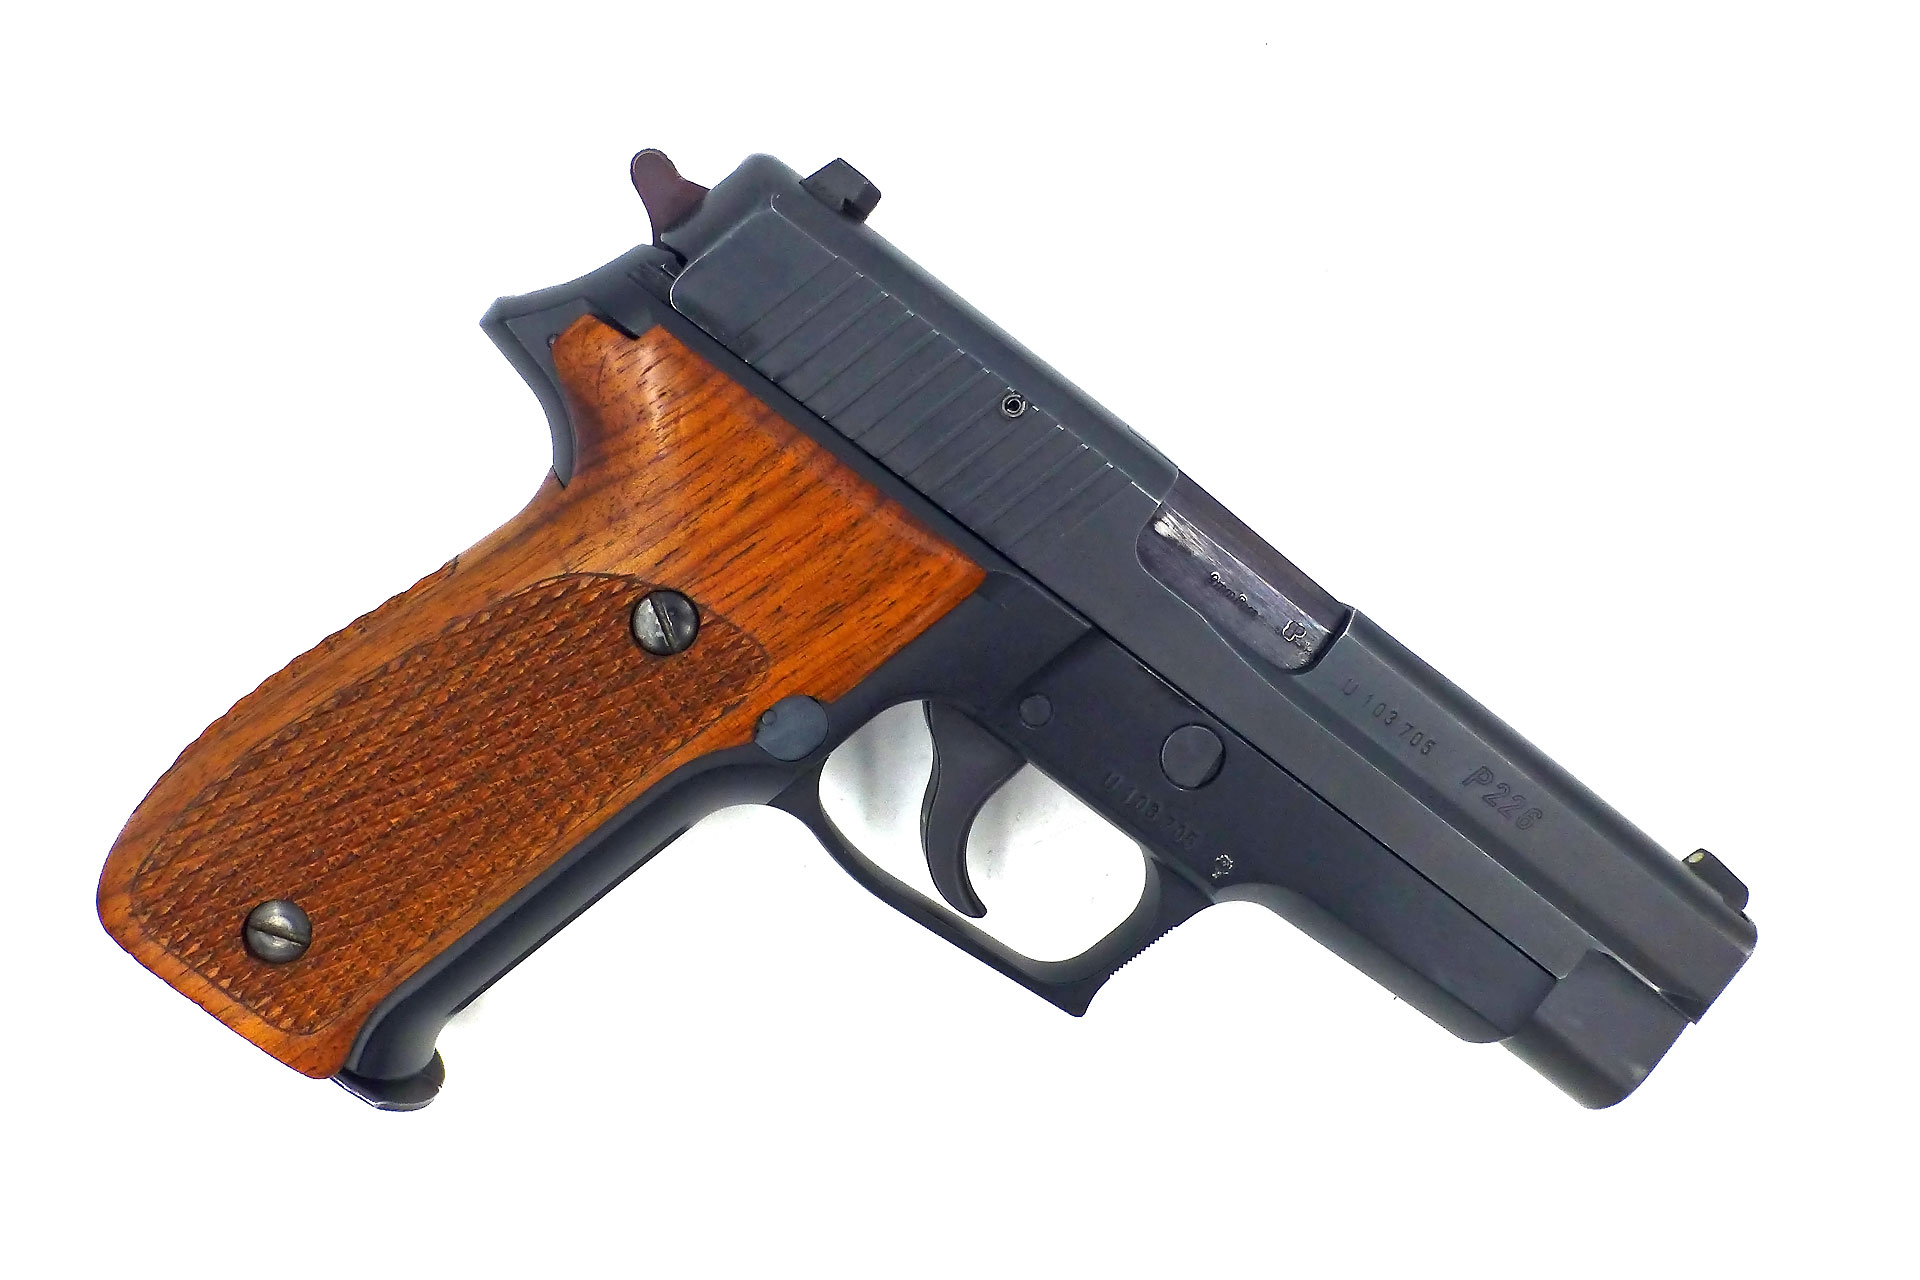  Pistolet  SIG  SAUER  P226 crosse bois Atelier d Armurerie 